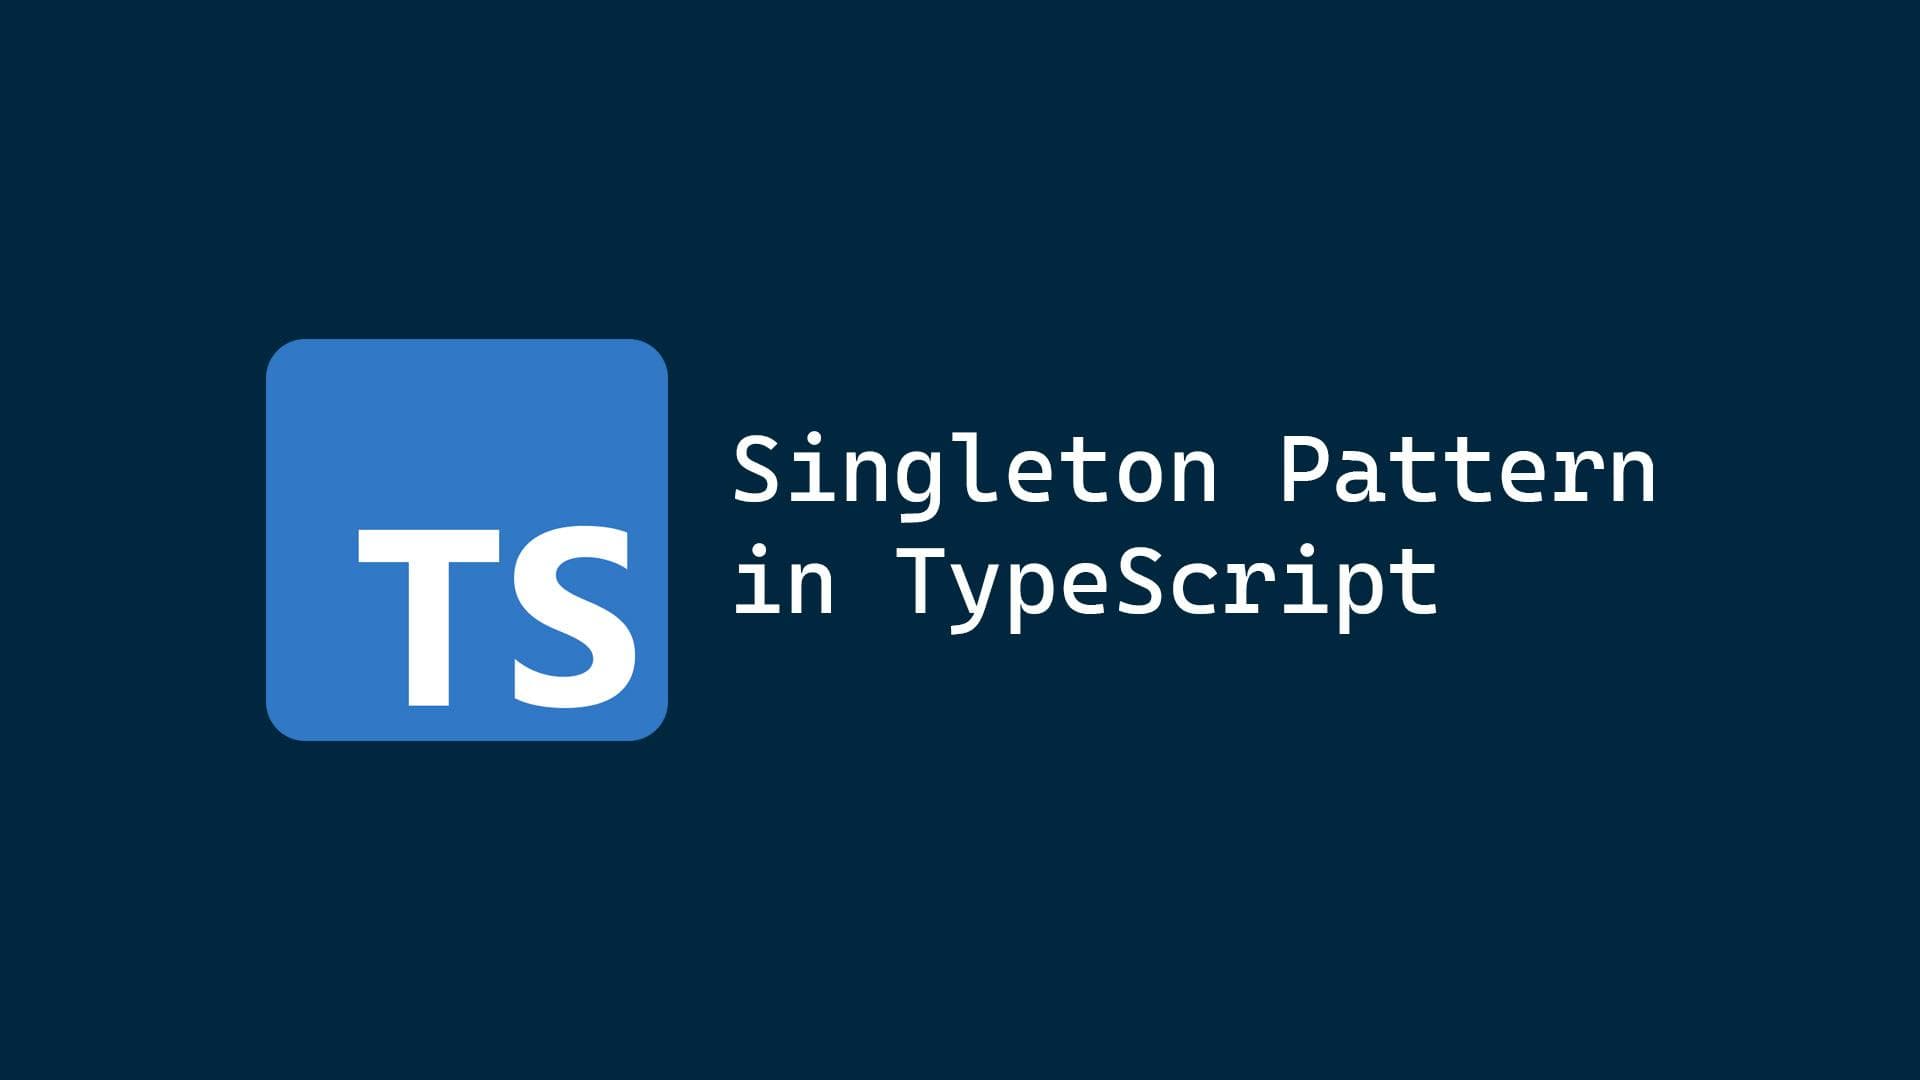 The Singleton pattern in TypeScript